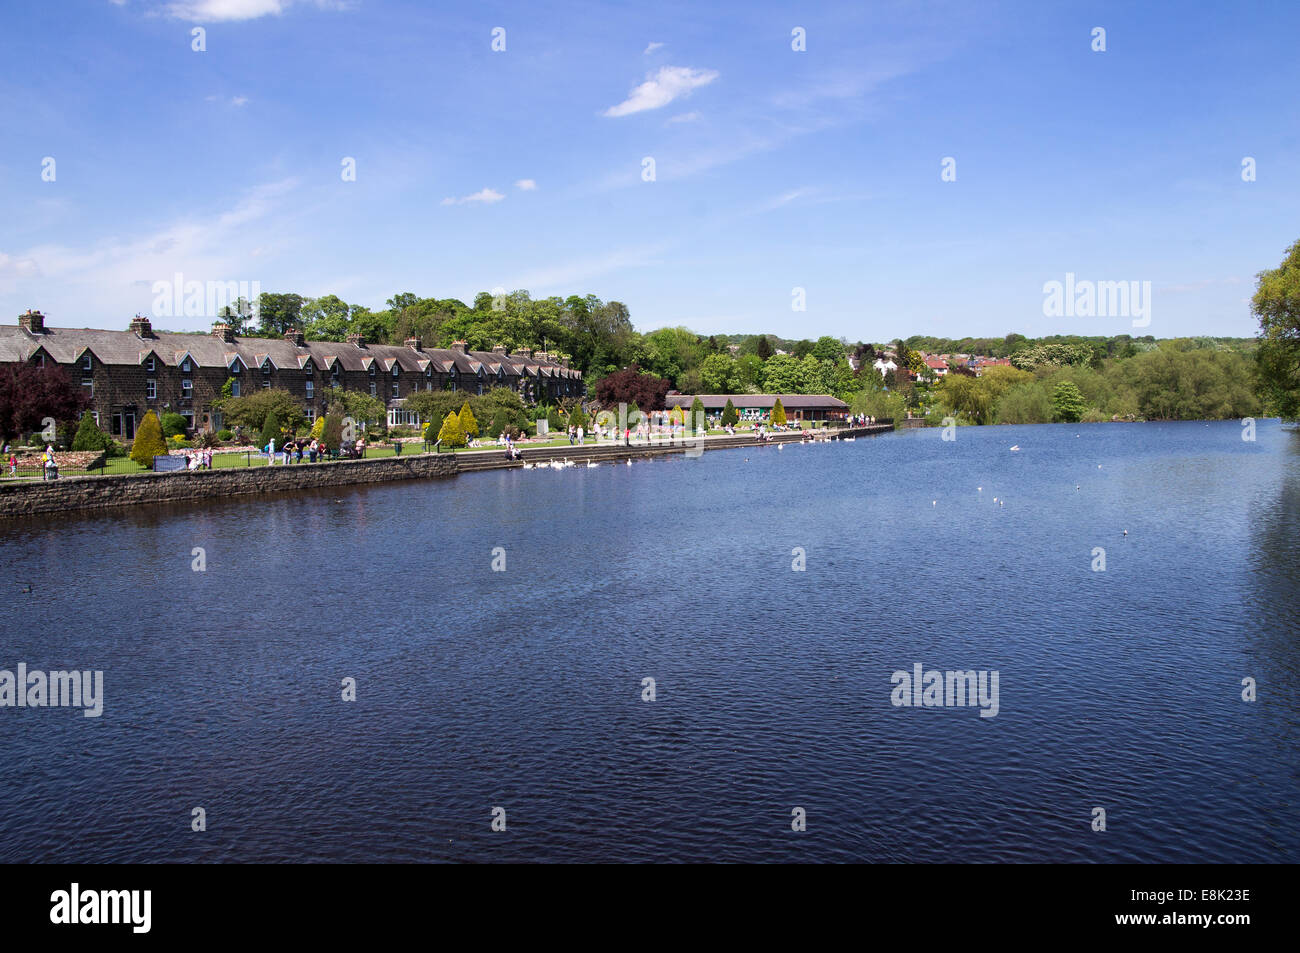 Vue de la rivière Wharfe à partir de la rue Bridge, à Otley, West Yorkshire en Angleterre. Banque D'Images